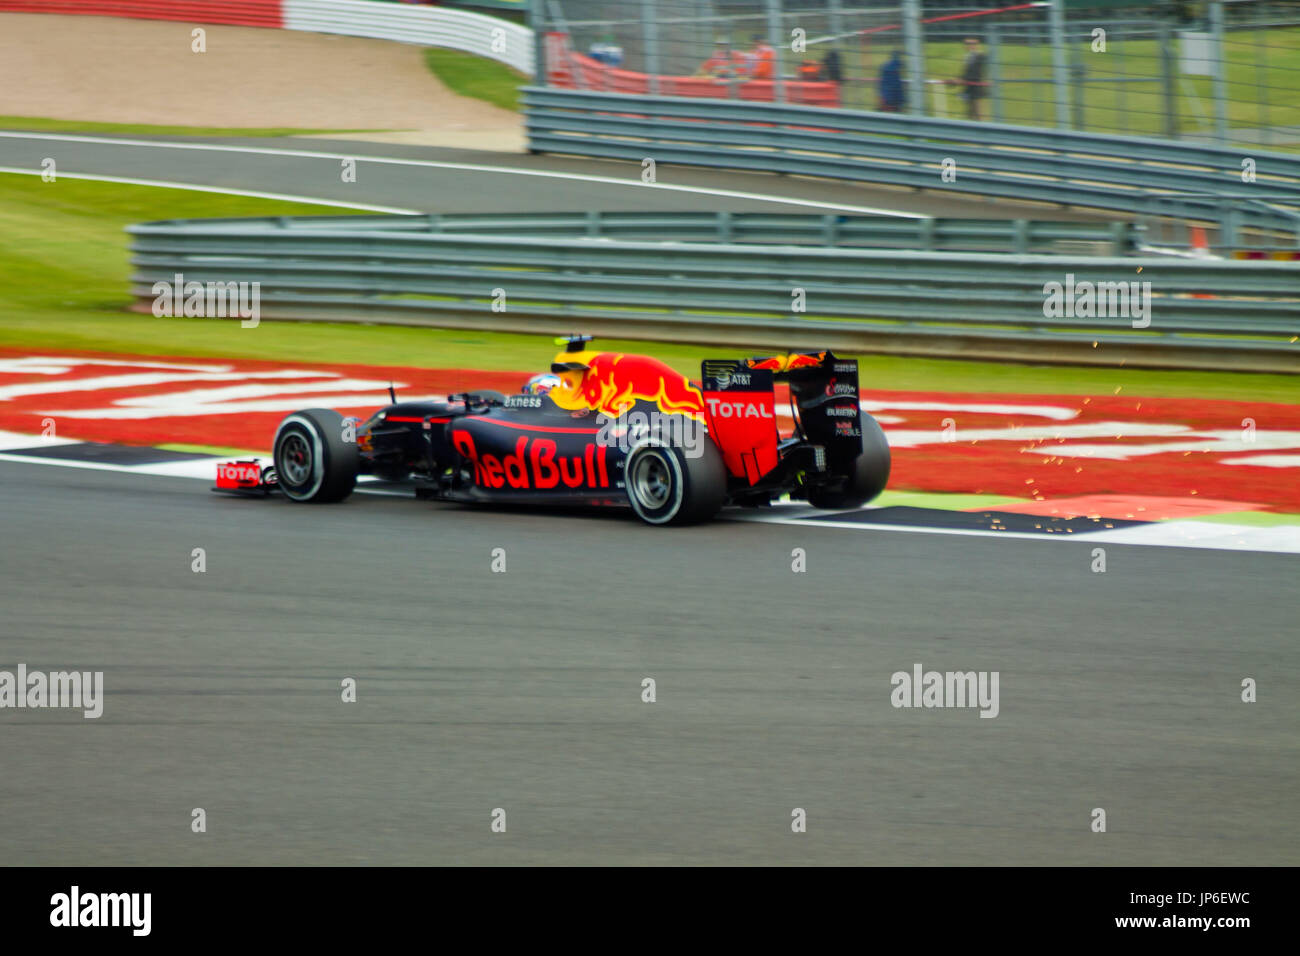 Red Bull bei der die erste Ecke des Grand Prix von Silverstone circuit während der 2016 britischen Formel 1 Grand Prix Stockfoto